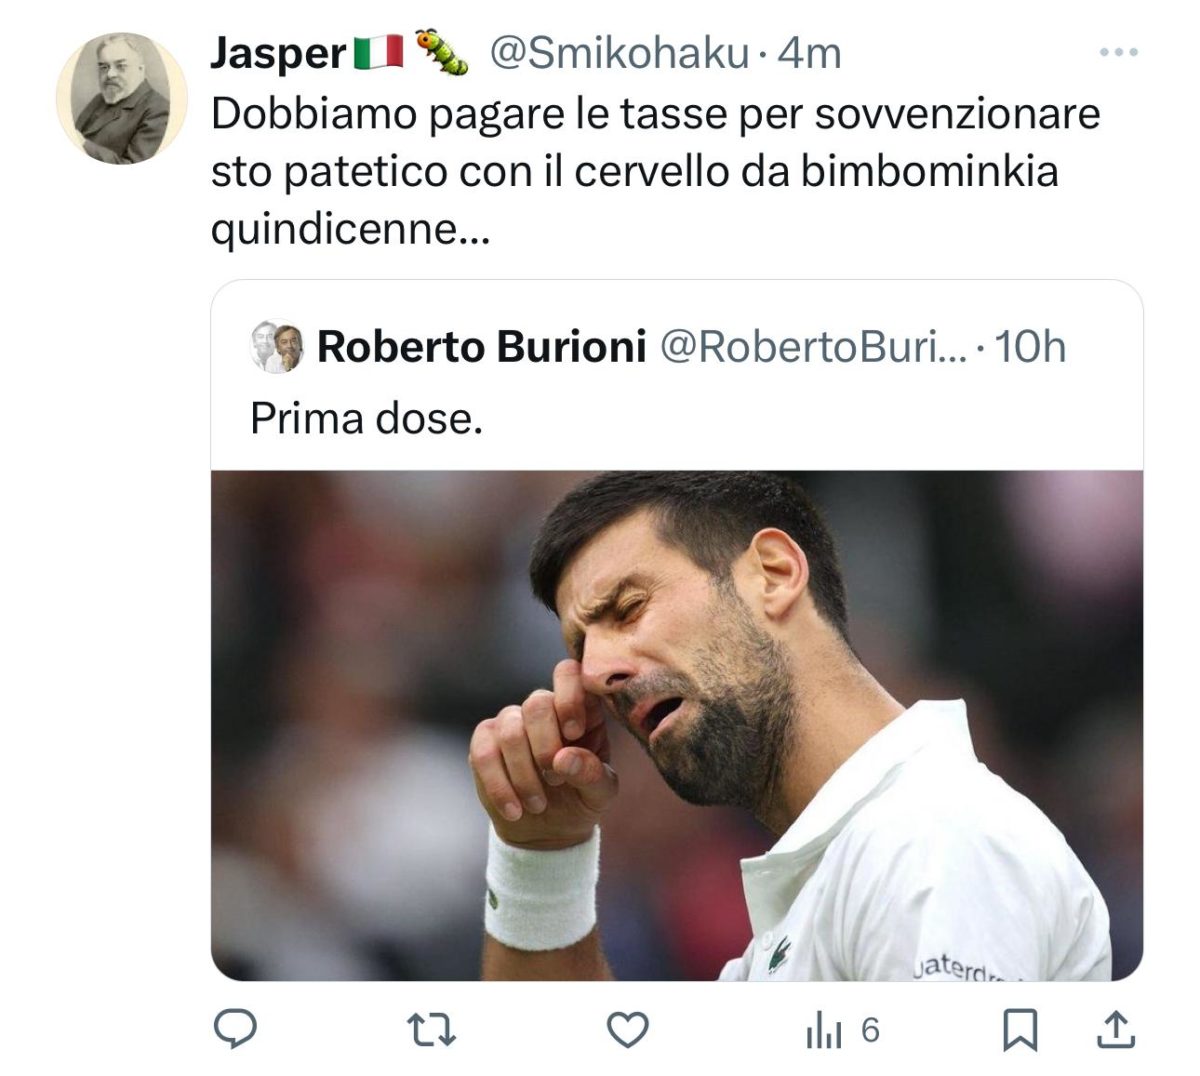 Burioni Djokovic Sinner tweet